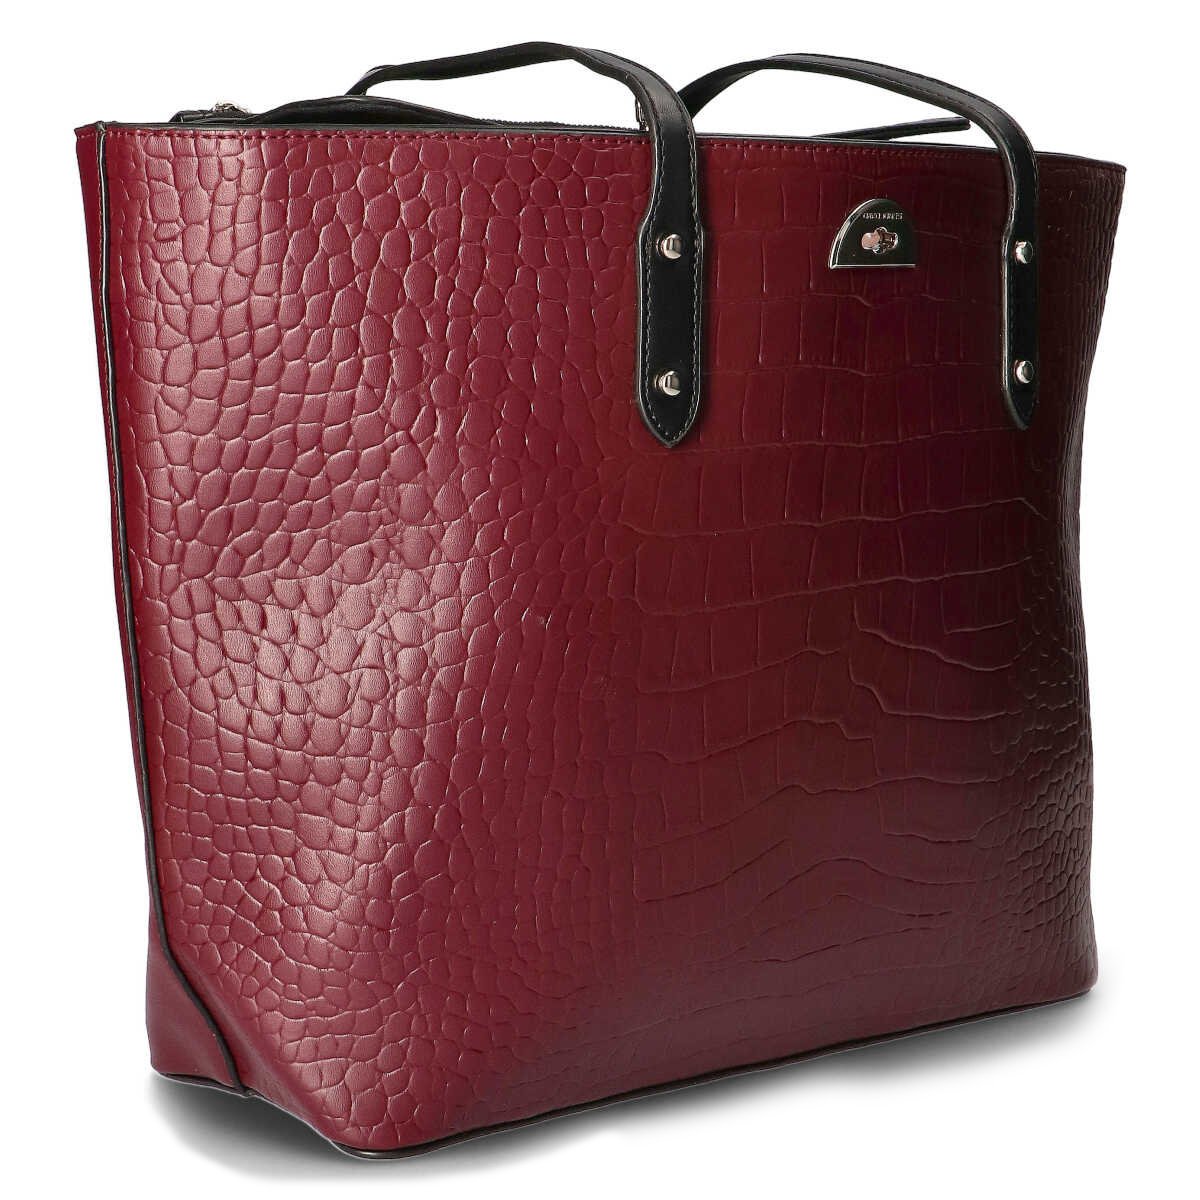 Buy Burgundy Ladies Handbag by David Jones Paris at